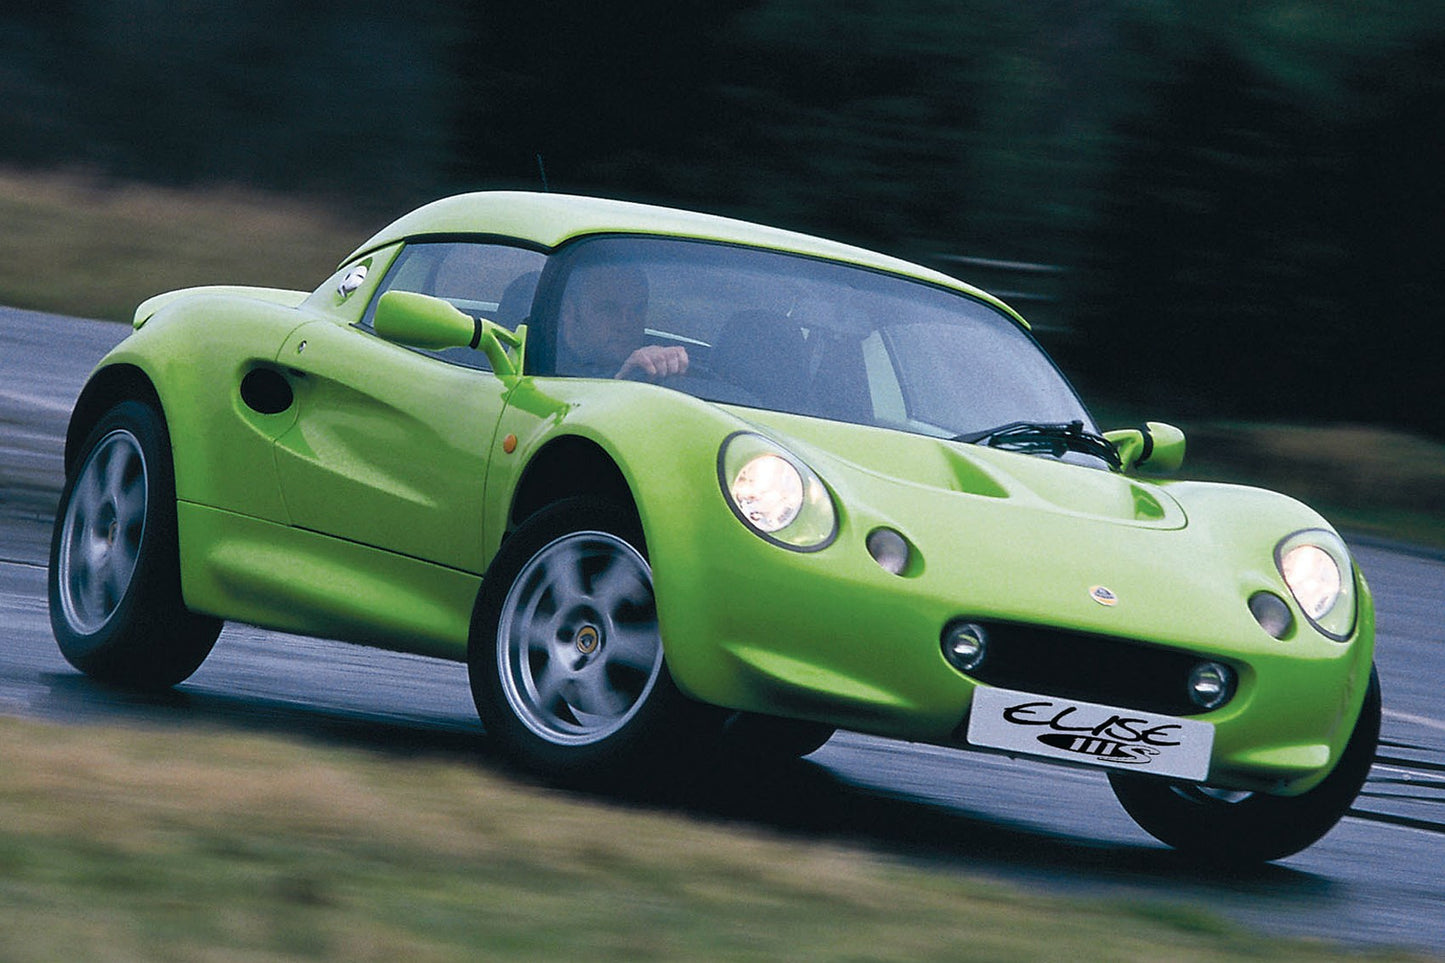 Lotus Elise (1996 - 2000) Front End PPF Kit